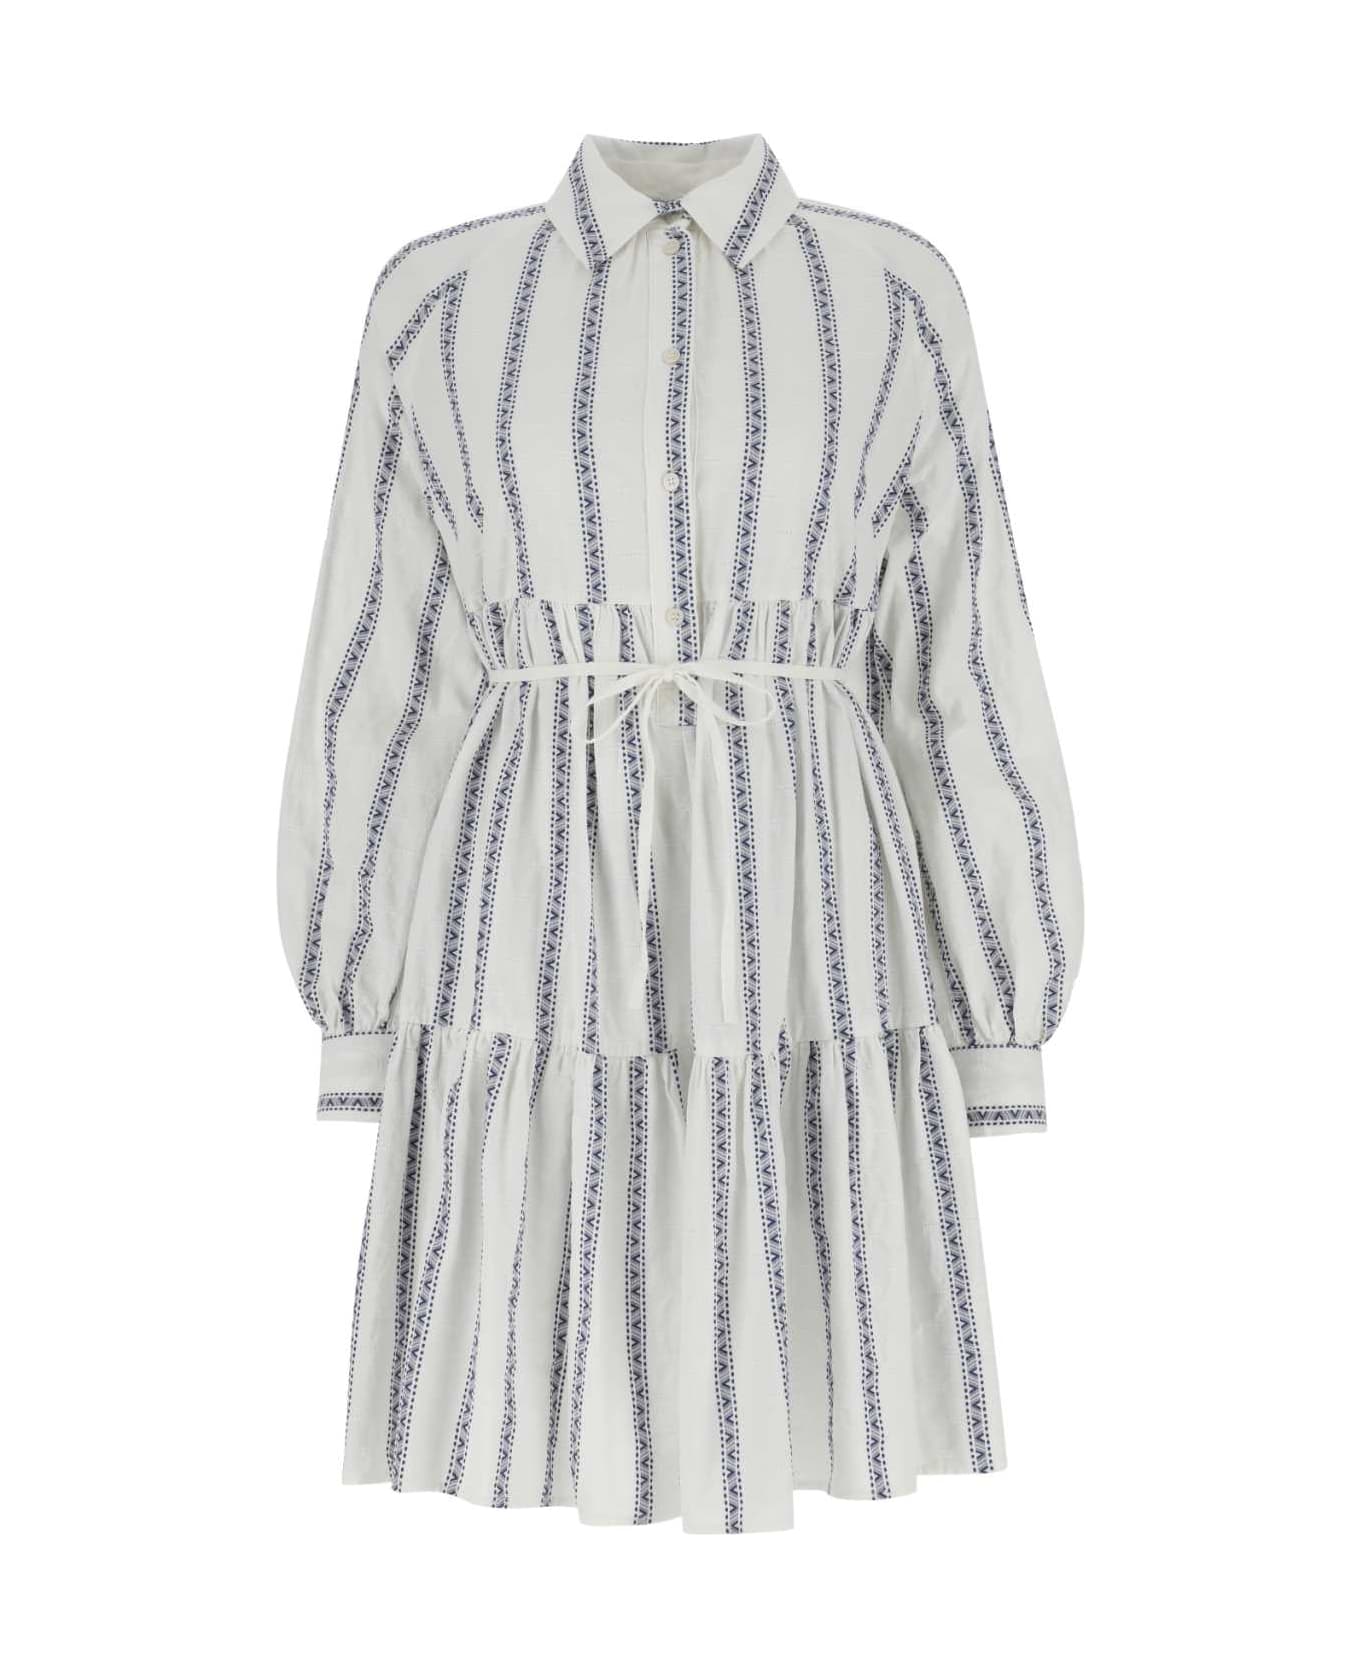 Woolrich Embroidered Cotton Shirt Dress - 8743